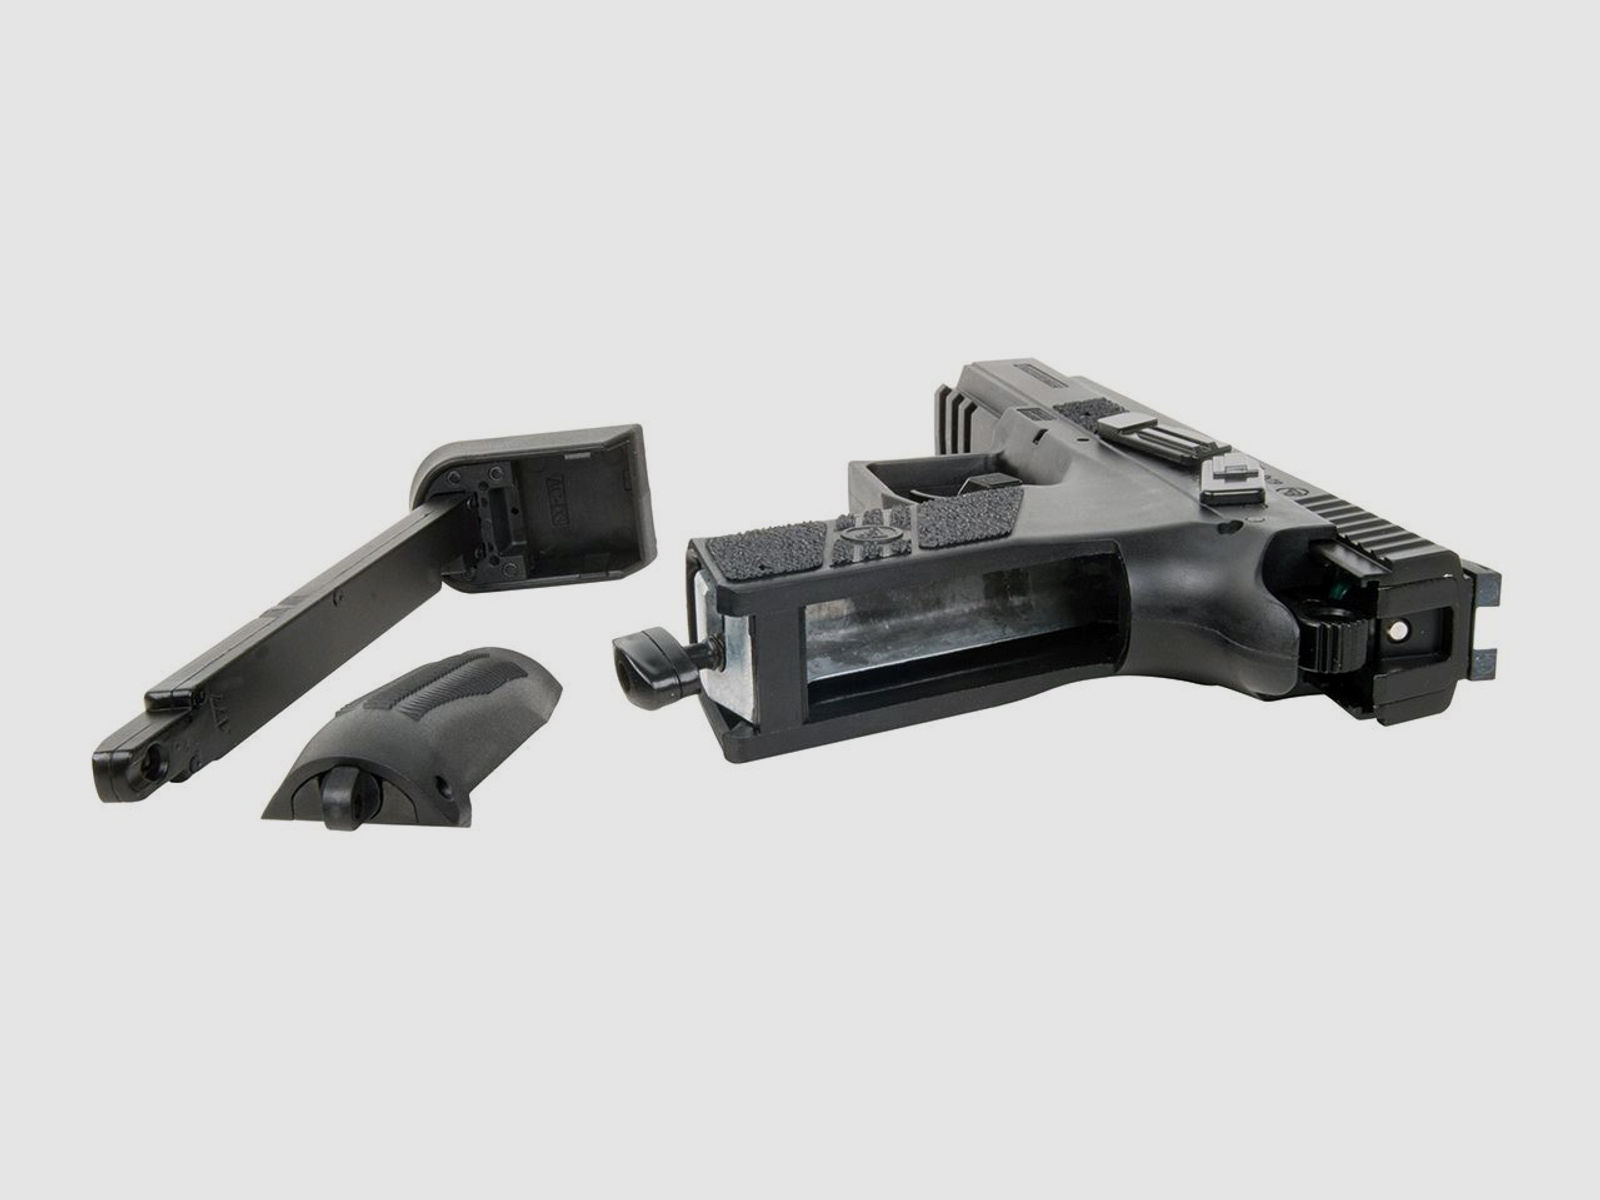 CO2 Pistole CZ 75 P-07 Duty Blow Back schwarz Metallschlitten Kaliber 4,5 mm BB (P18)+ SchalldĂ¤mpfer Adapter